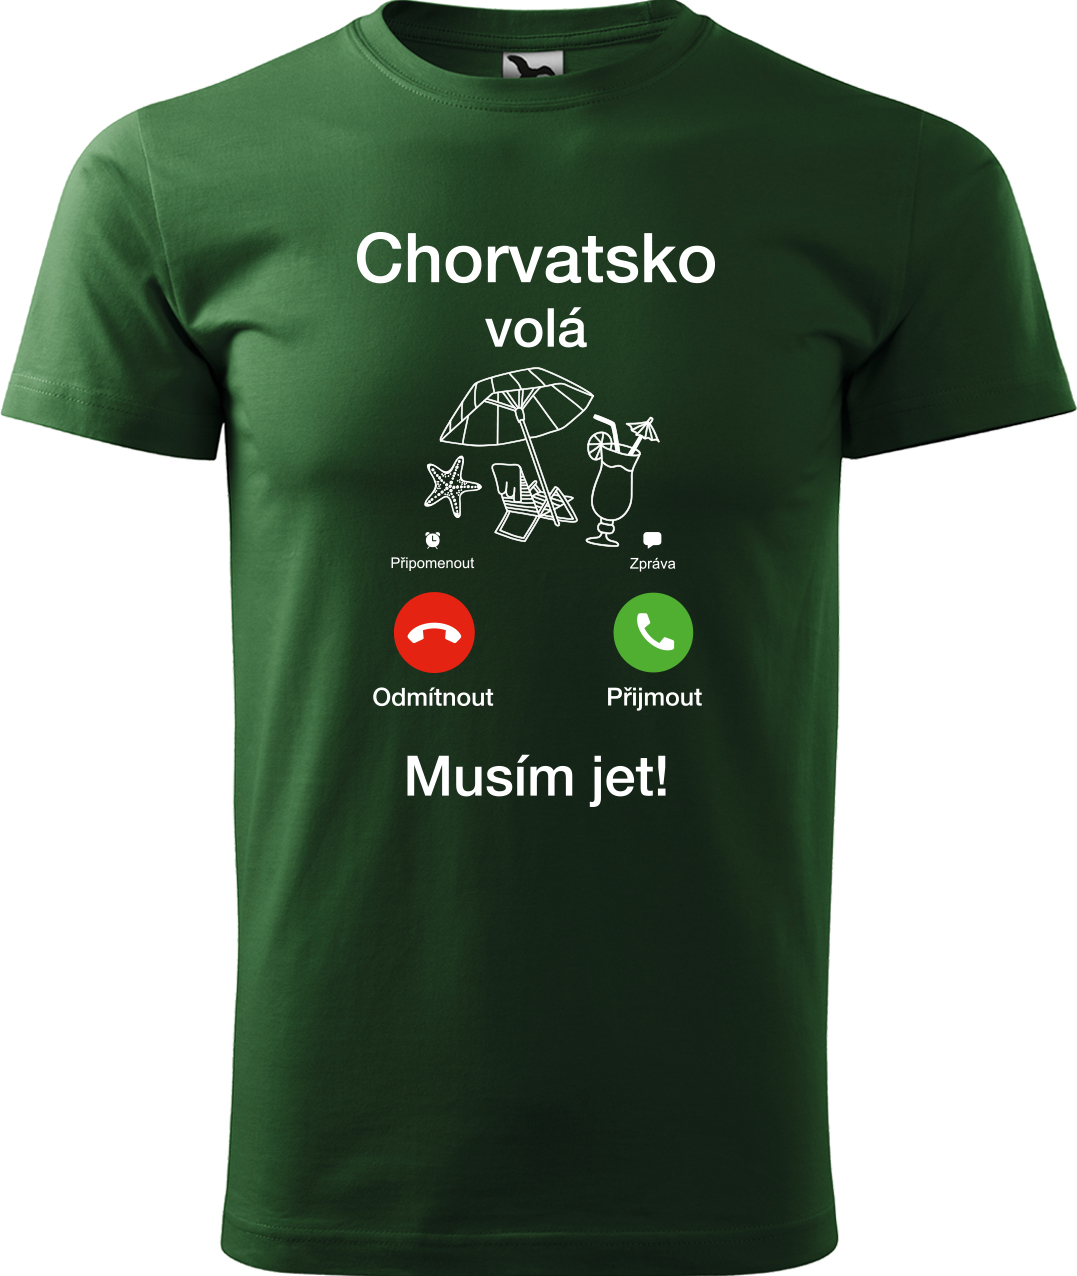 Pánské cestovatelské tričko - Chorvatsko volá - musím jet! Velikost: XL, Barva: Lahvově zelená (06), Střih: pánský